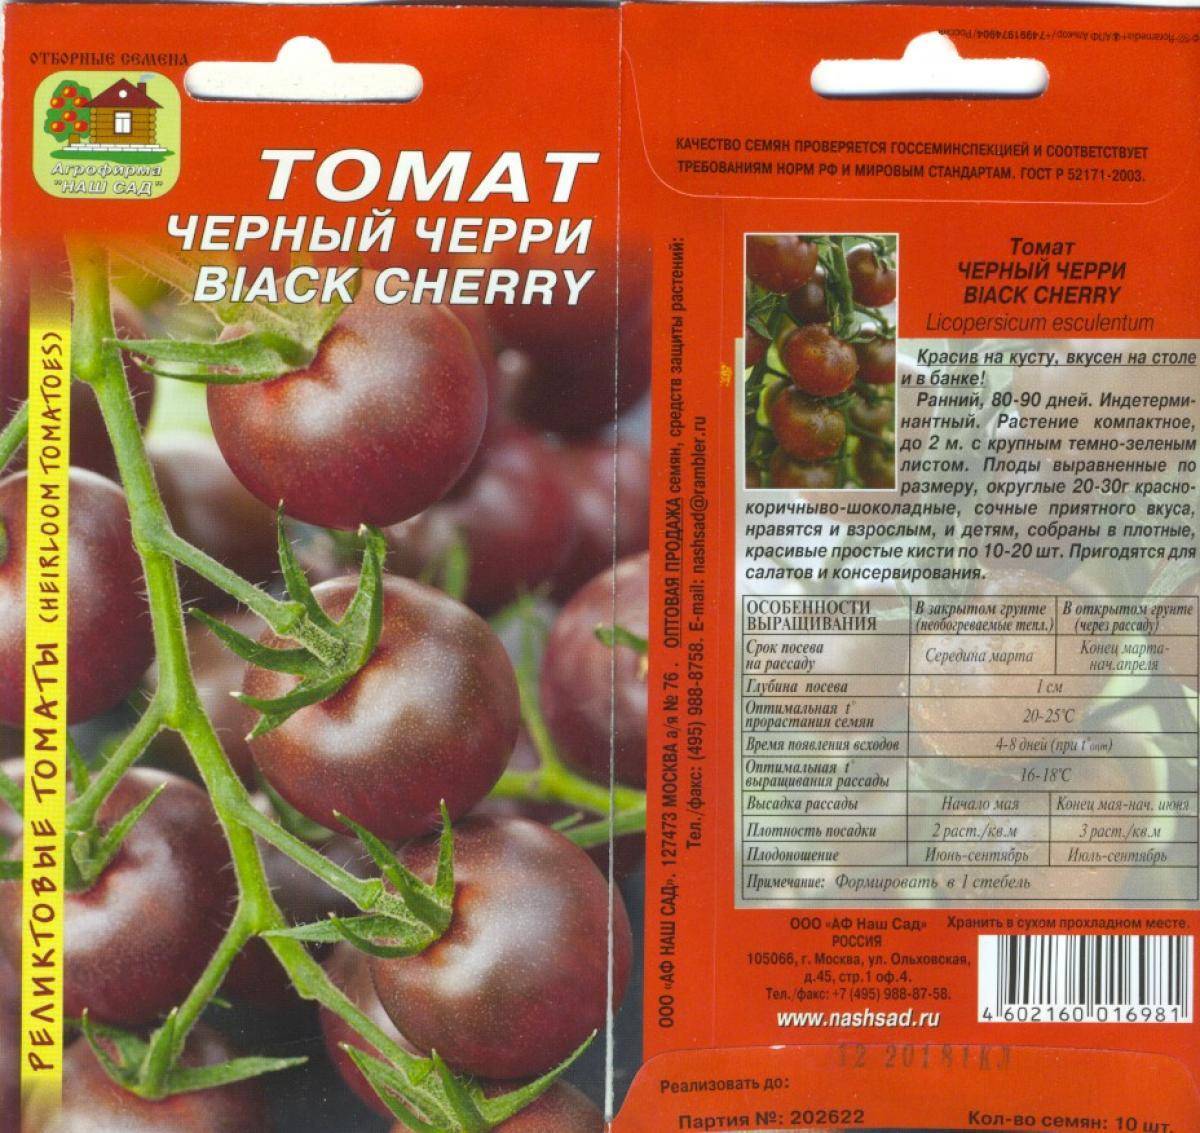 Томат черный русский: характеристика и описание сорта, отзывы об урожайности помидоров, фото семян аэлита